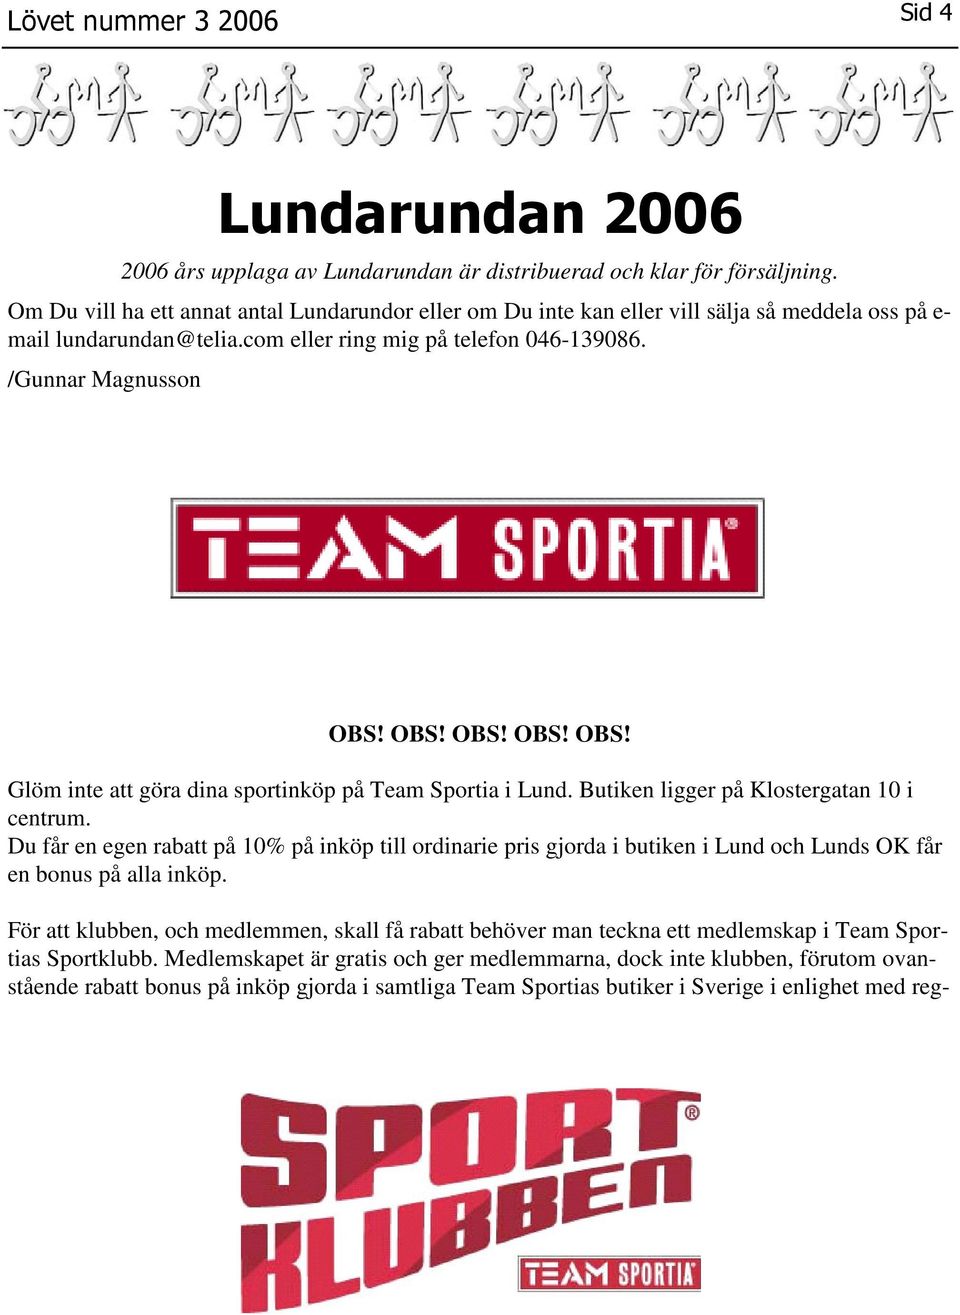 OBS! OBS! OBS! OBS! Glöm inte att göra dina sportinköp på Team Sportia i Lund. Butiken ligger på Klostergatan 10 i centrum.